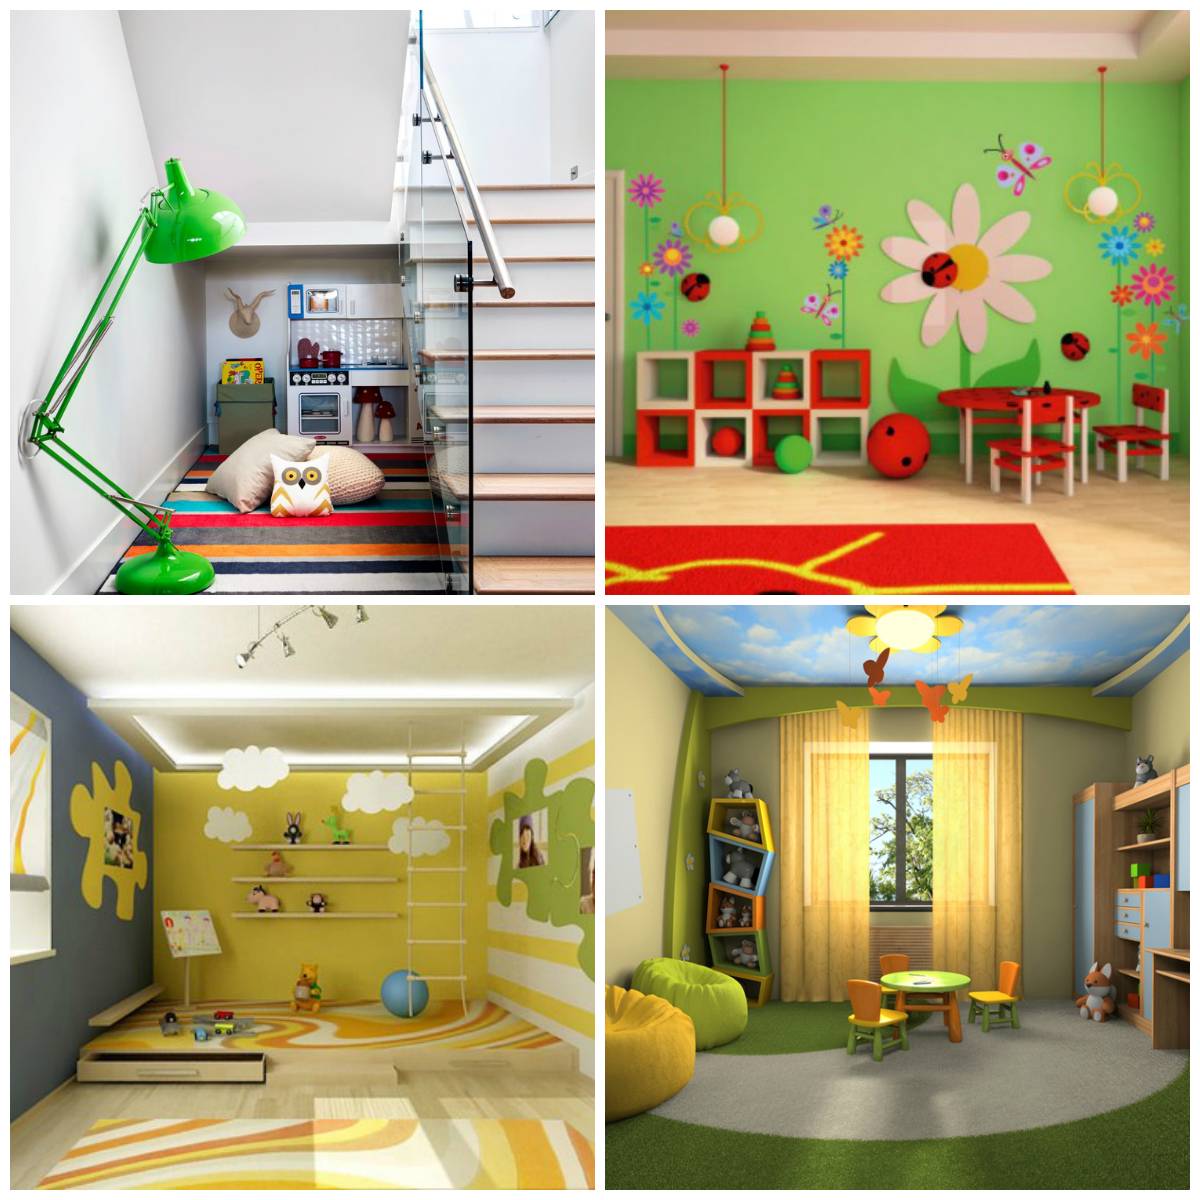 Освещение в детской комнате: 20 фото идей